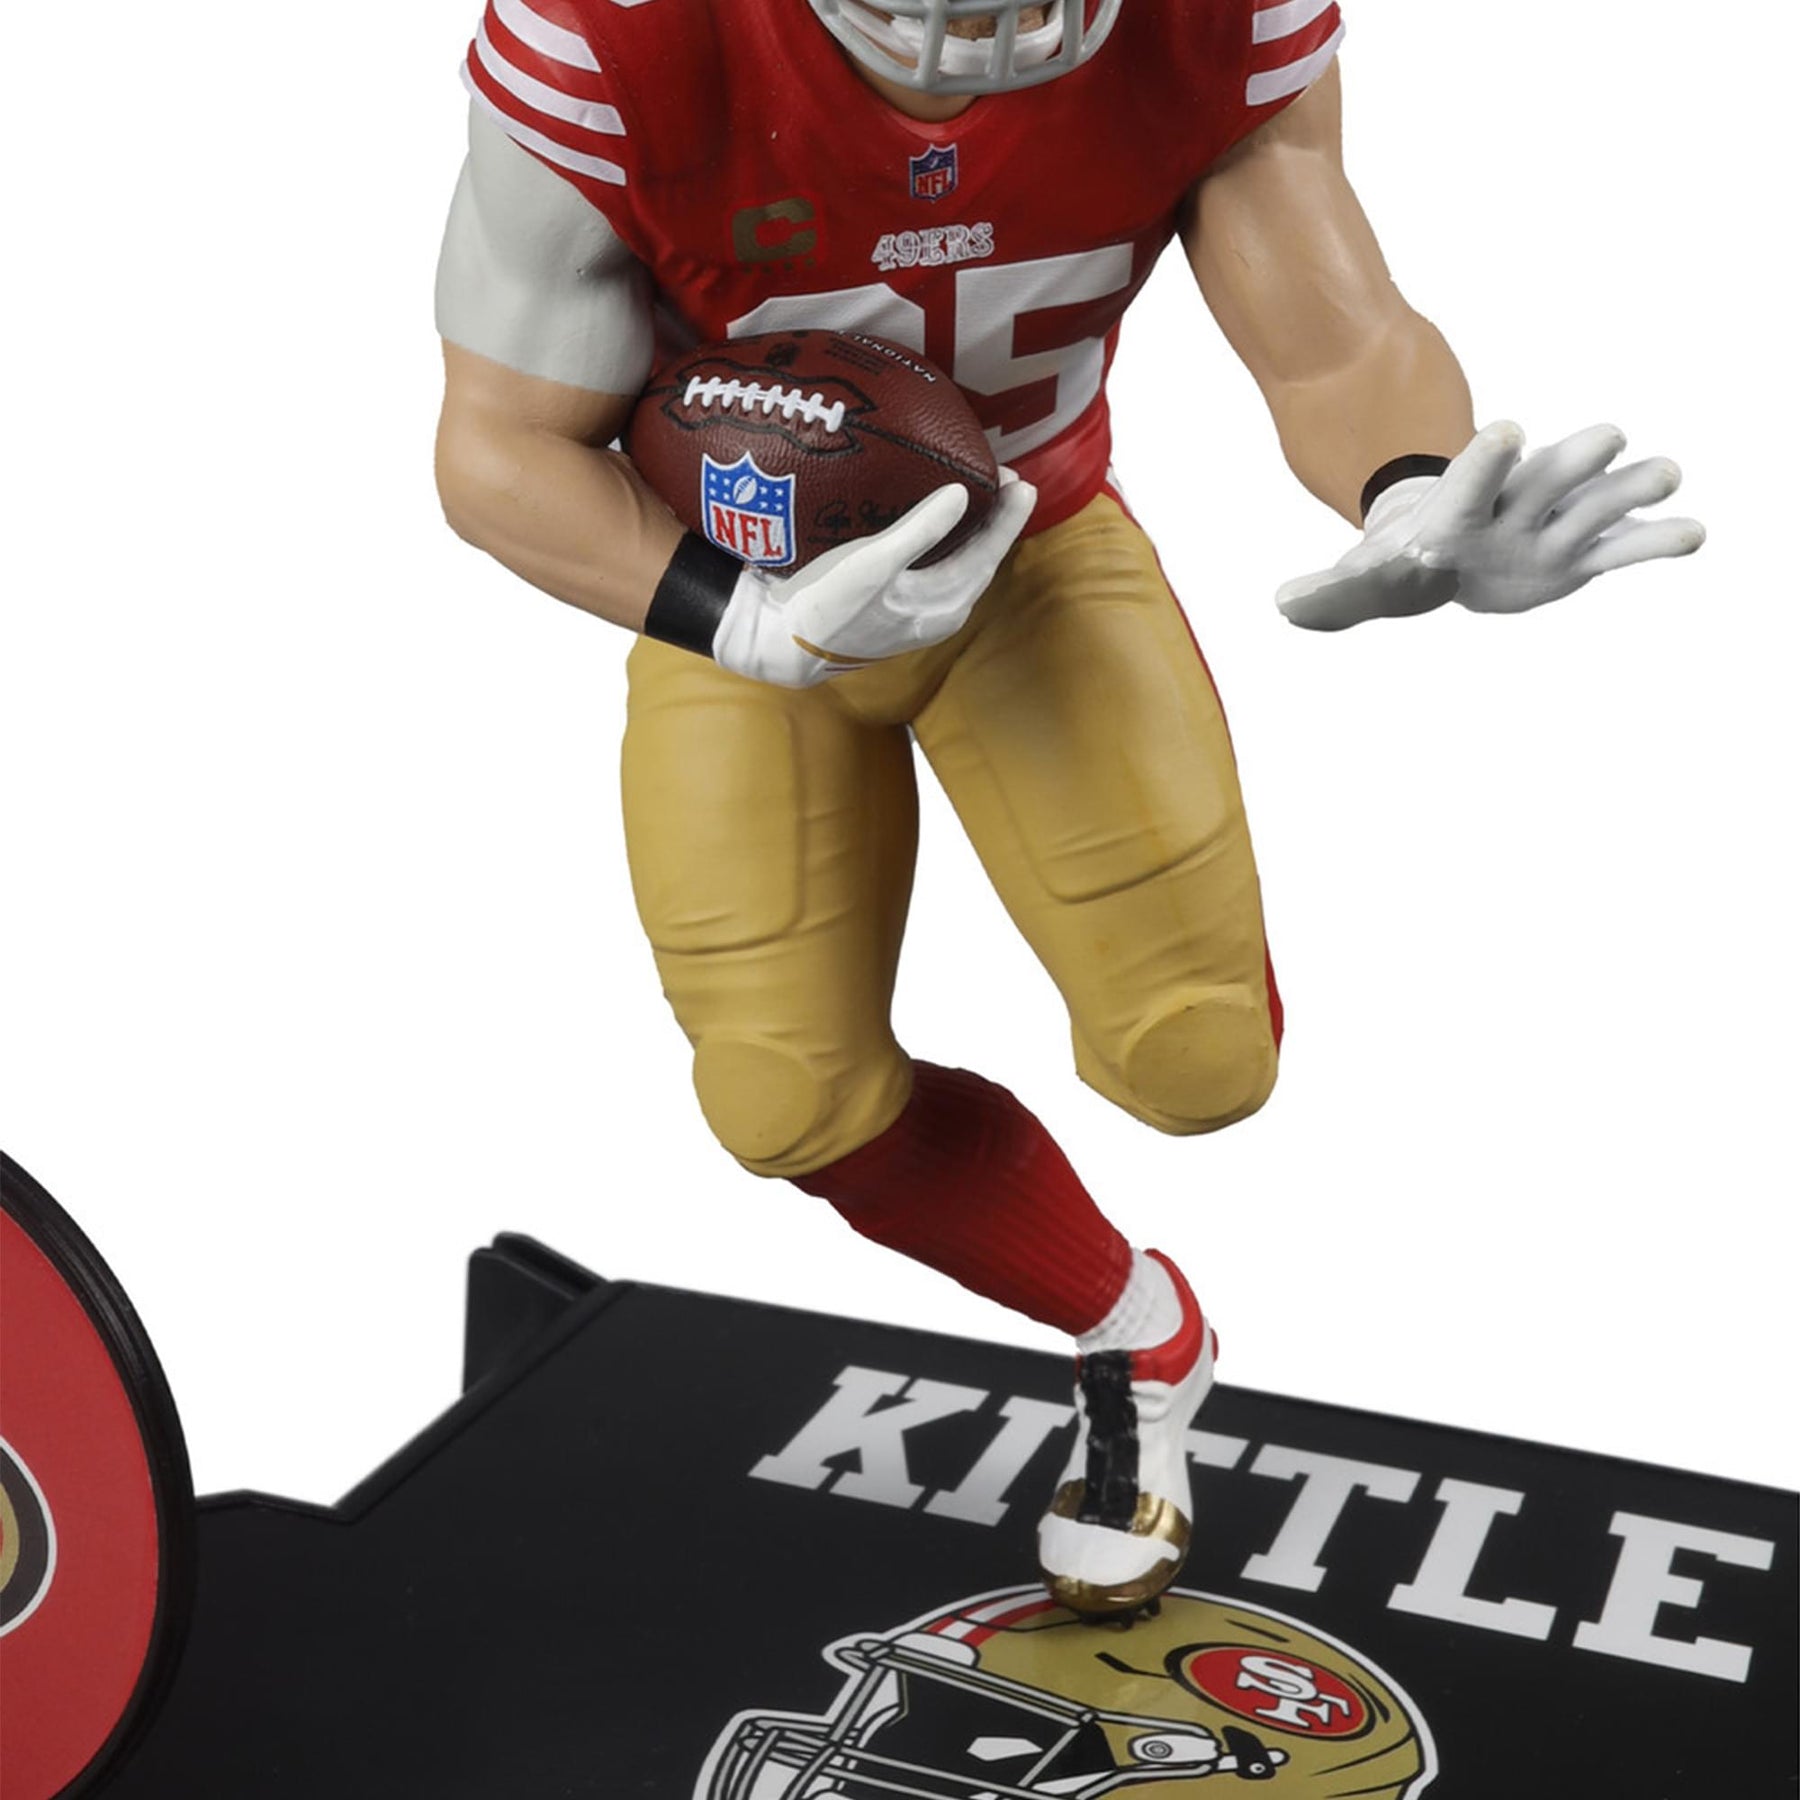 San Fransisco 49ers NFL SportsPicks Figure | George Kittle